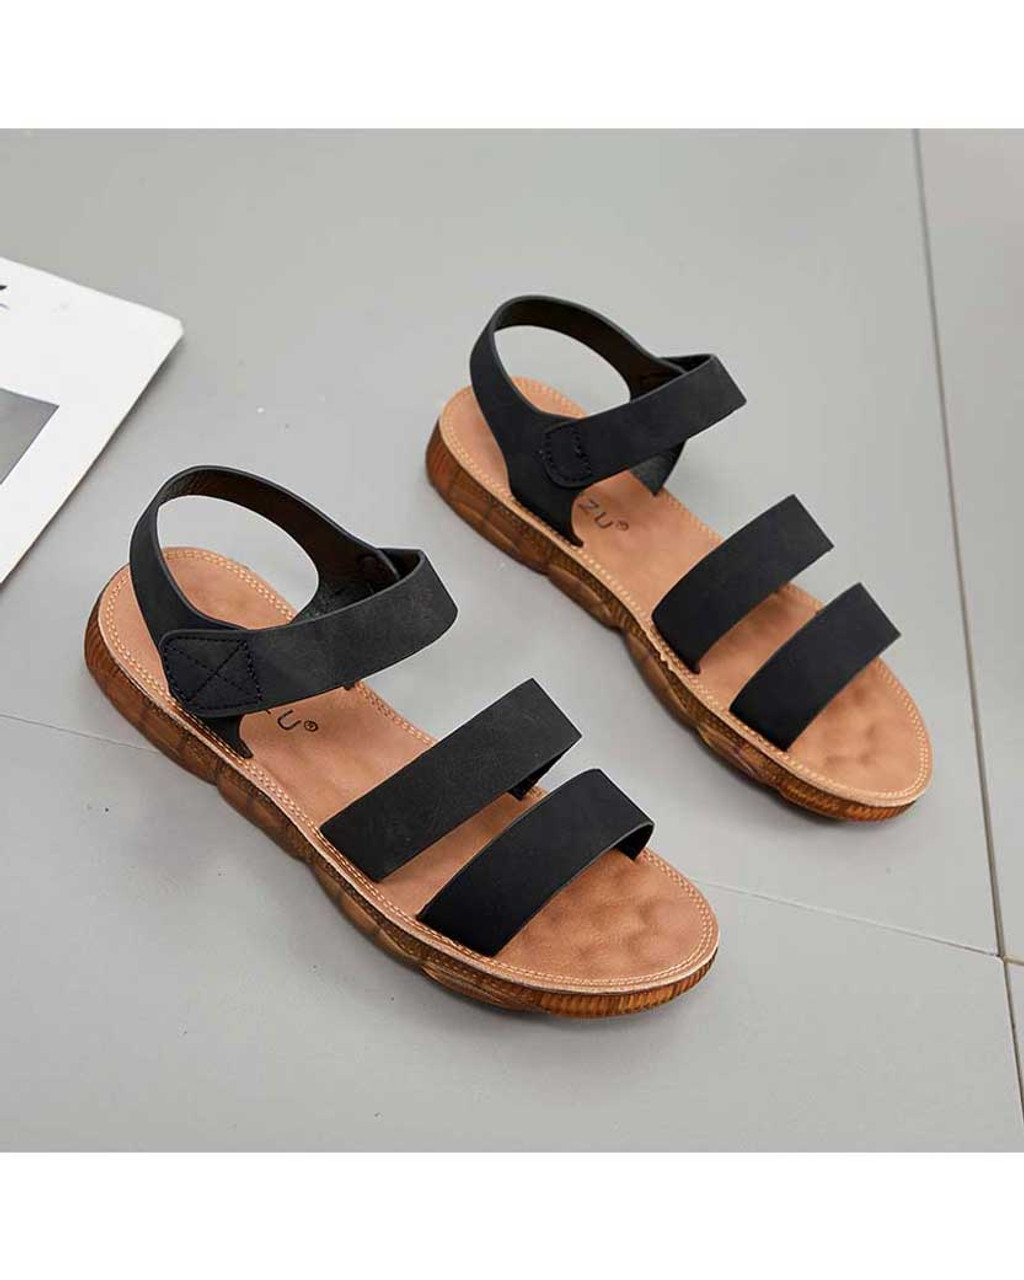 Black velcro fastening slip on shoe sandal | Womens shoe sandals online ...